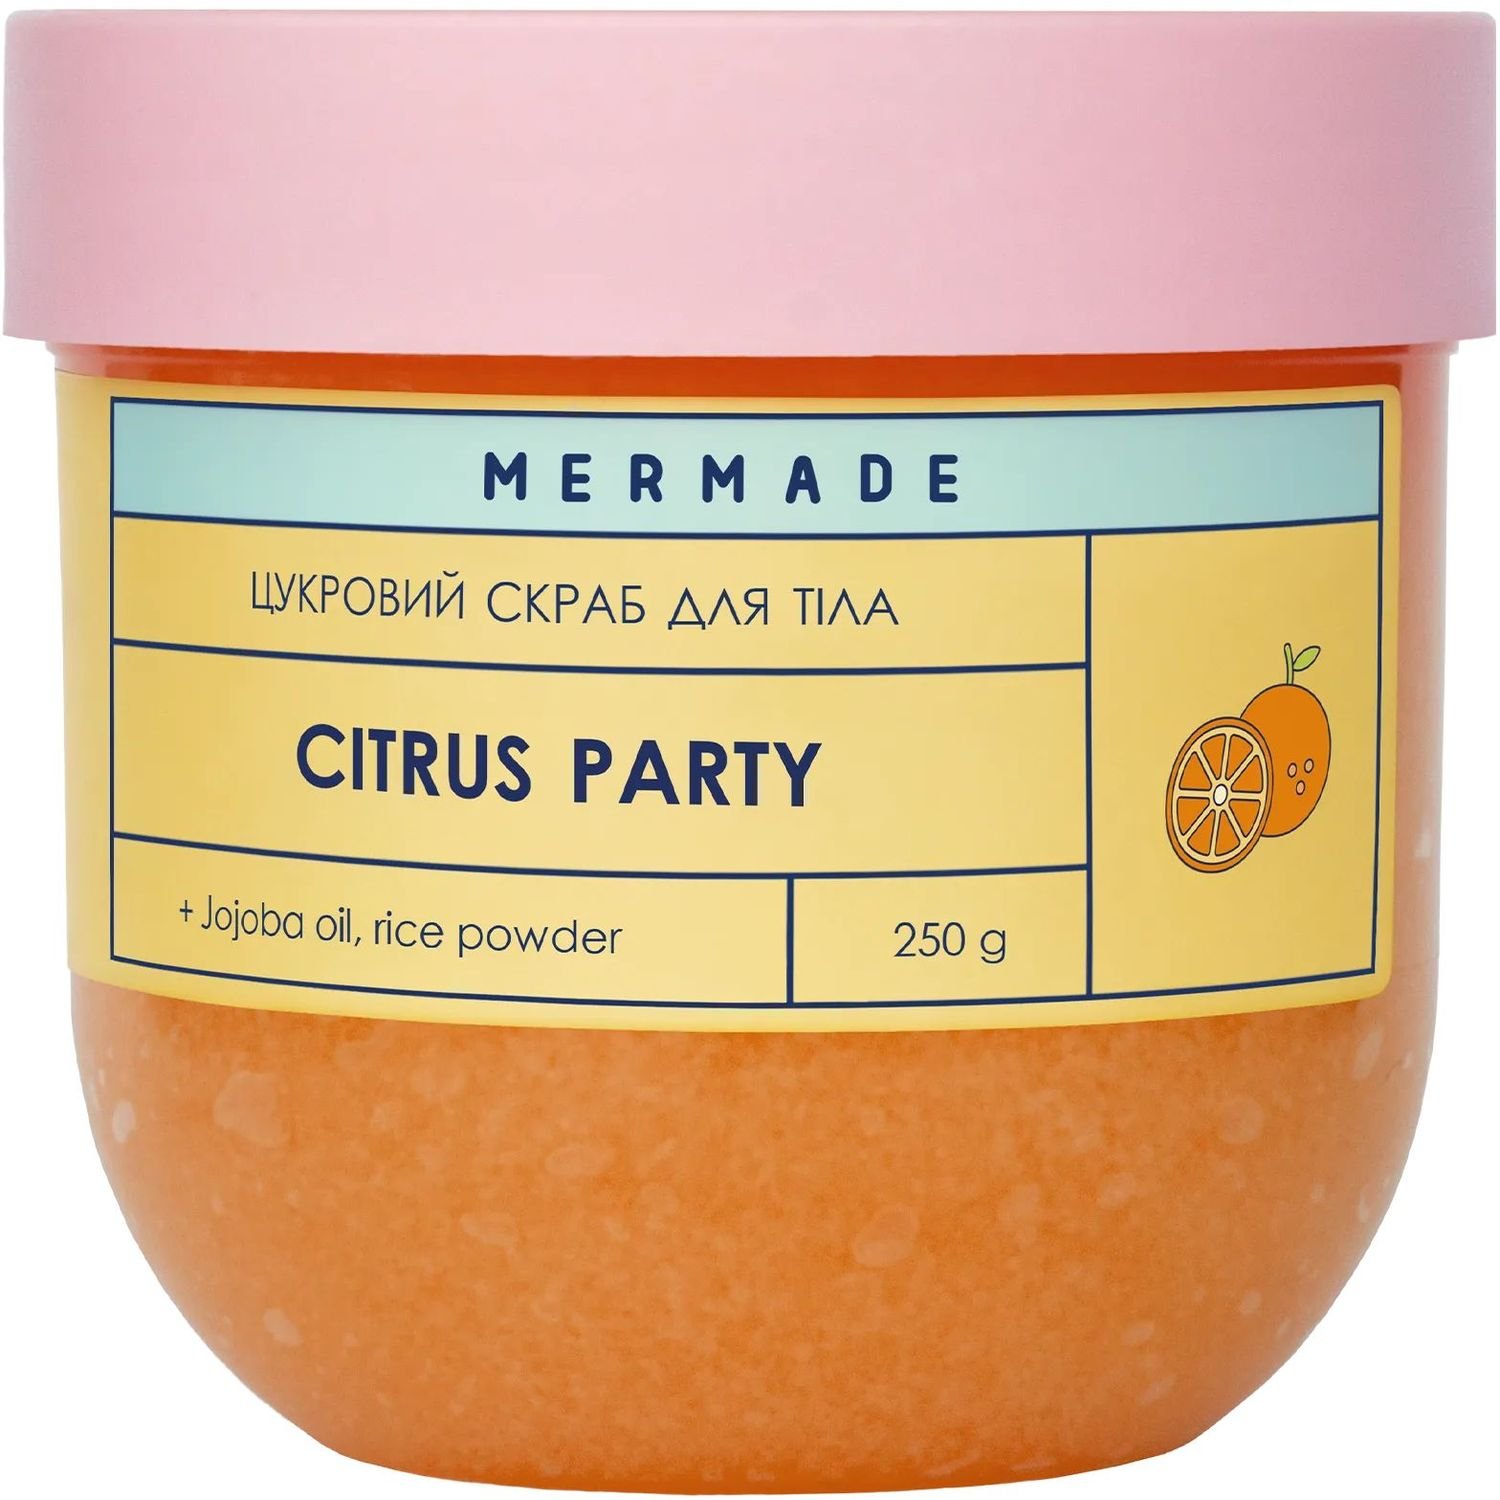 Сахарный скраб для тела Mermade Citrus Party 250 г - фото 1